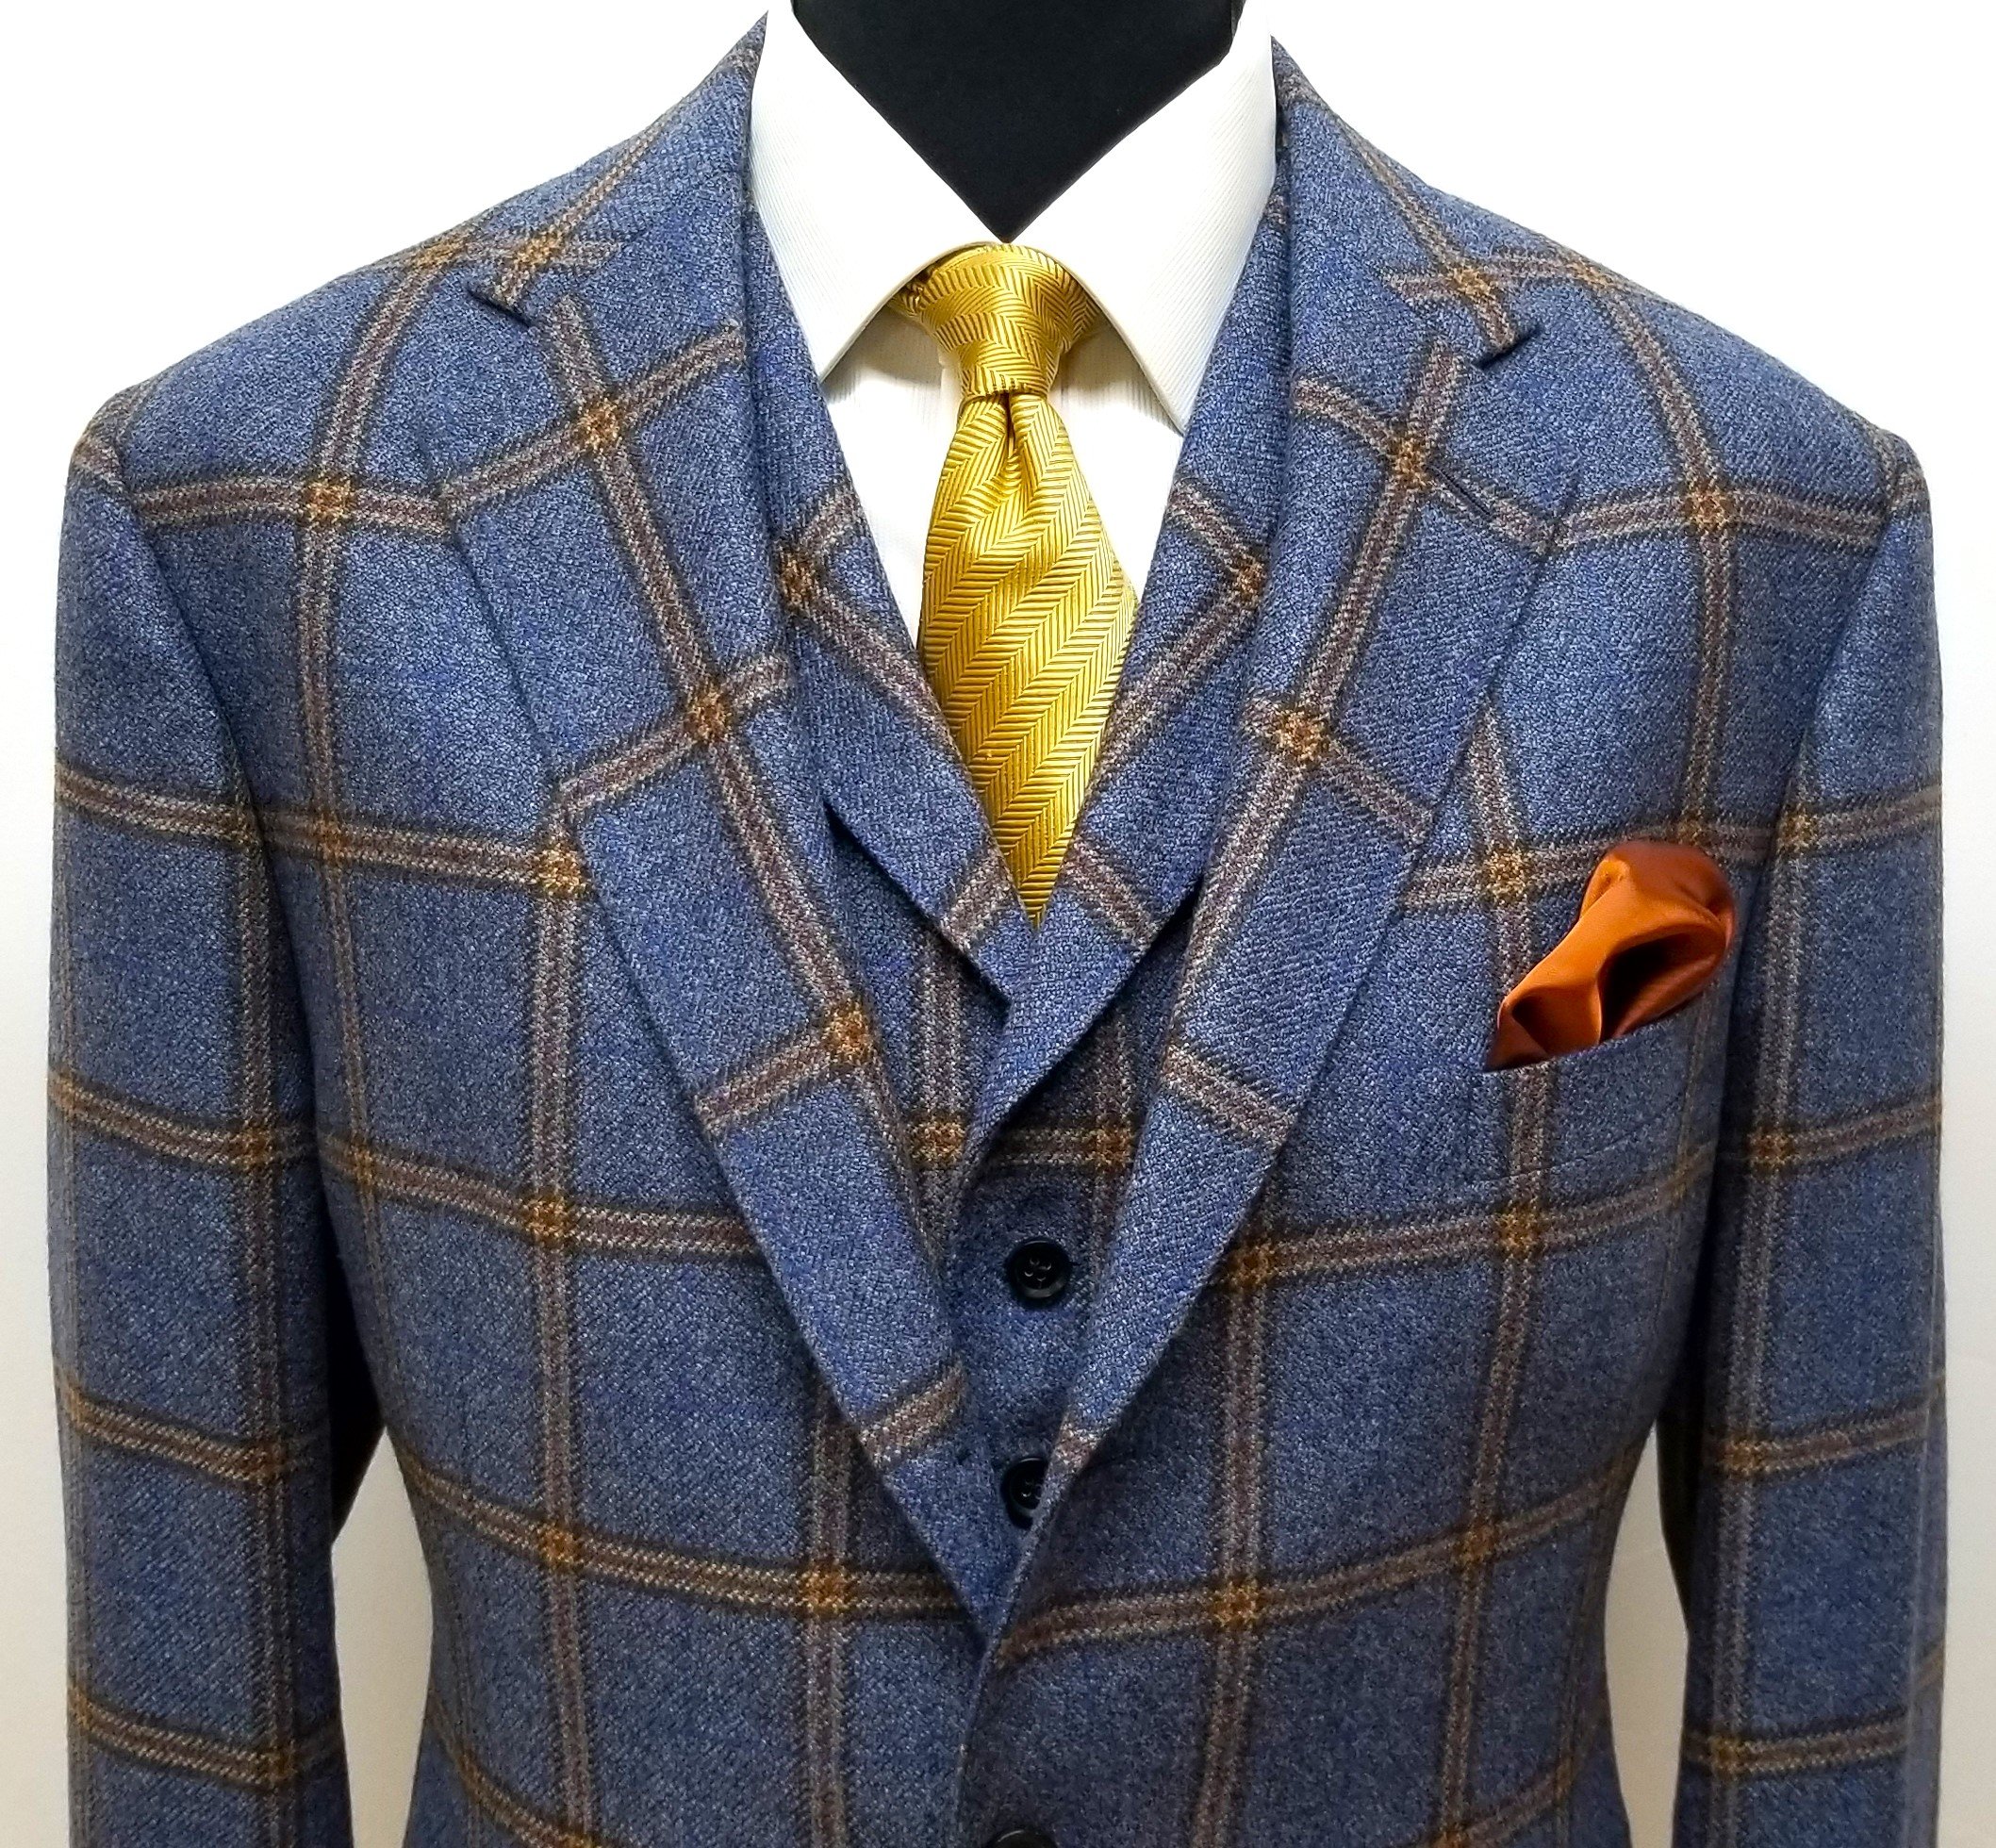 3 Piece suit in blue check tweed (5).jpg